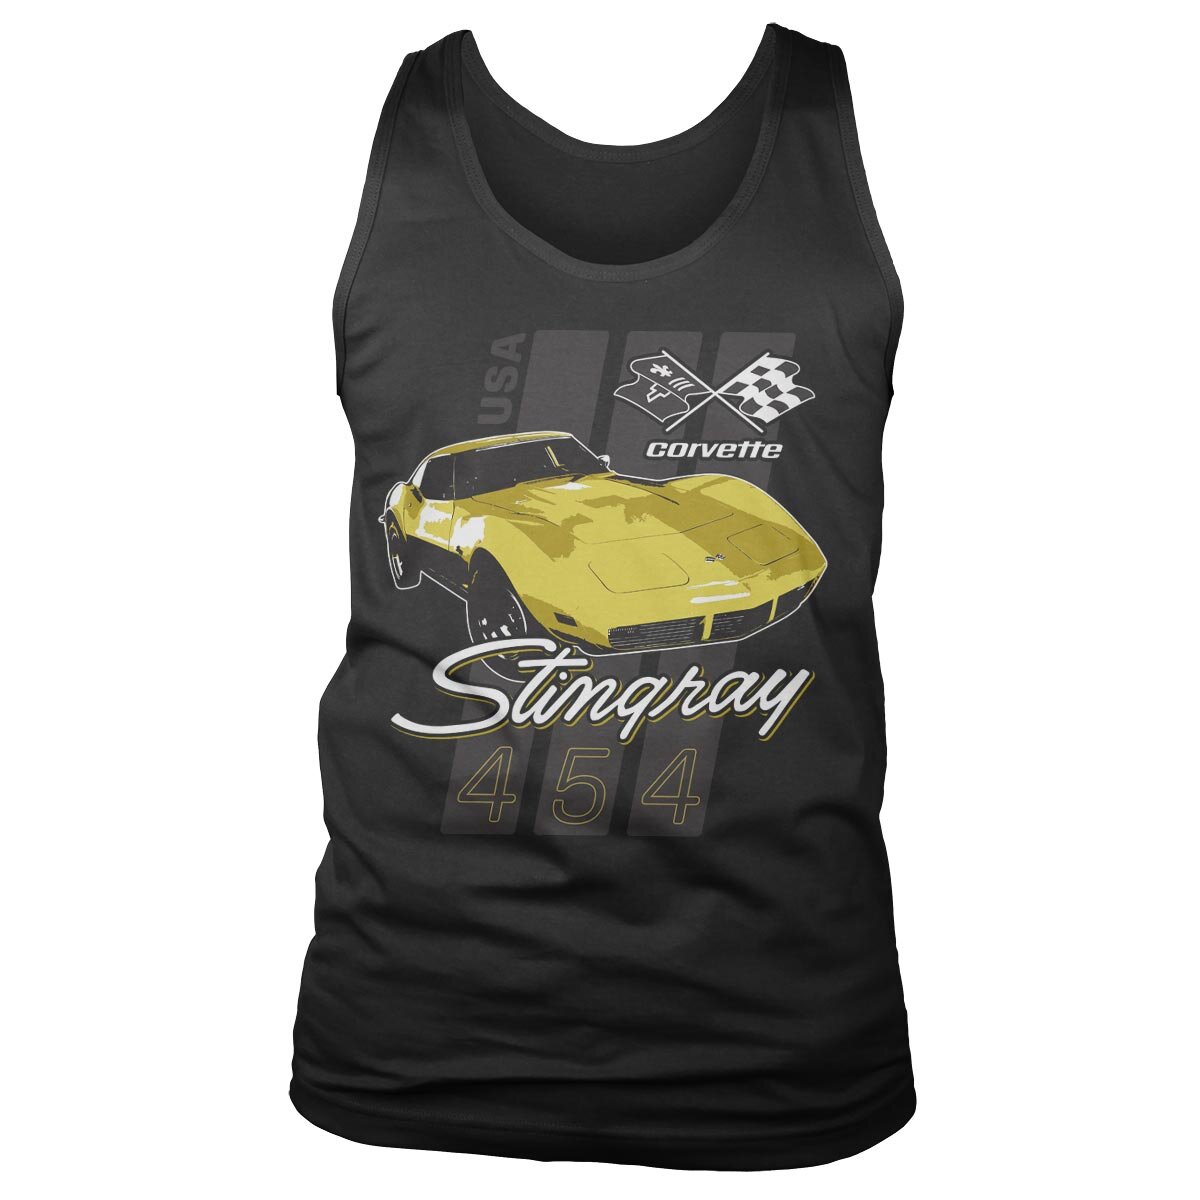 Corvette Stingray 454 Tank Top